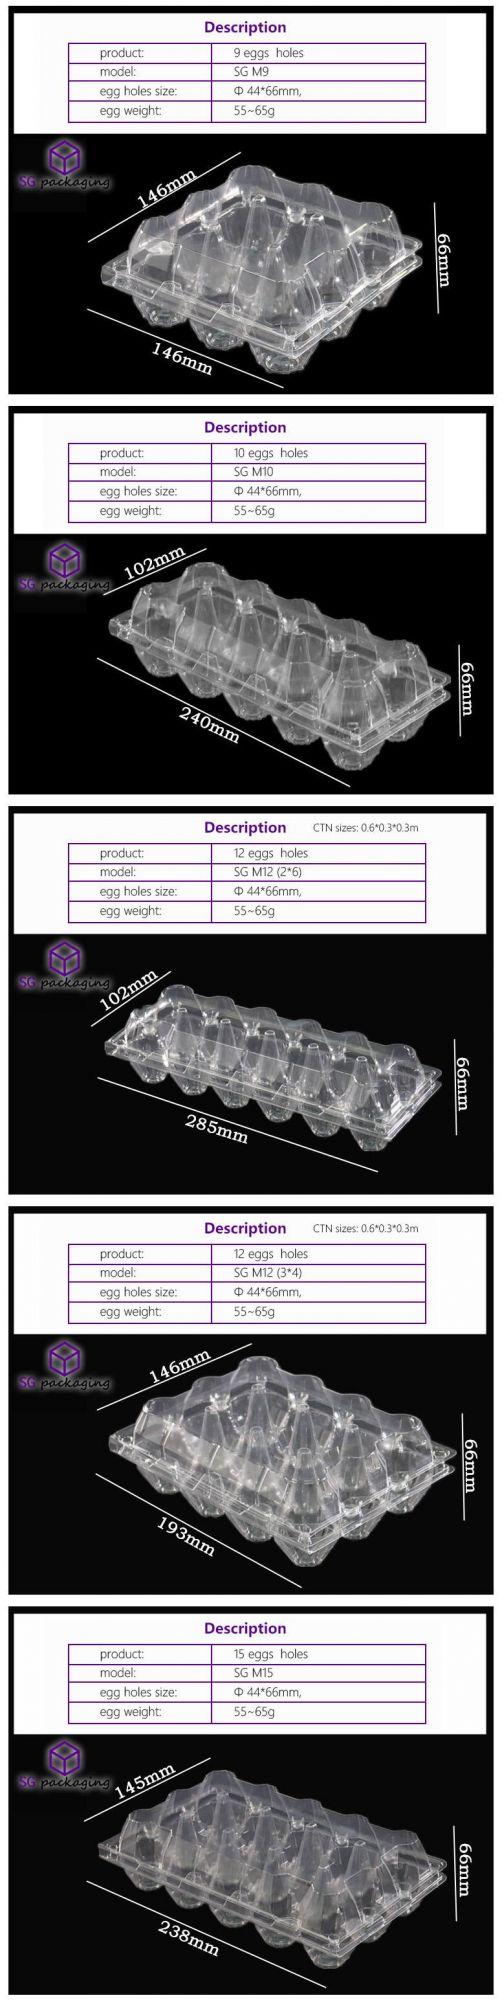 2/4/6/8/9/10/12/15/18/20/24/28/30 Wholesale Disposable Pet Transparent Plastic Egg Crate / Box with 10 Cells